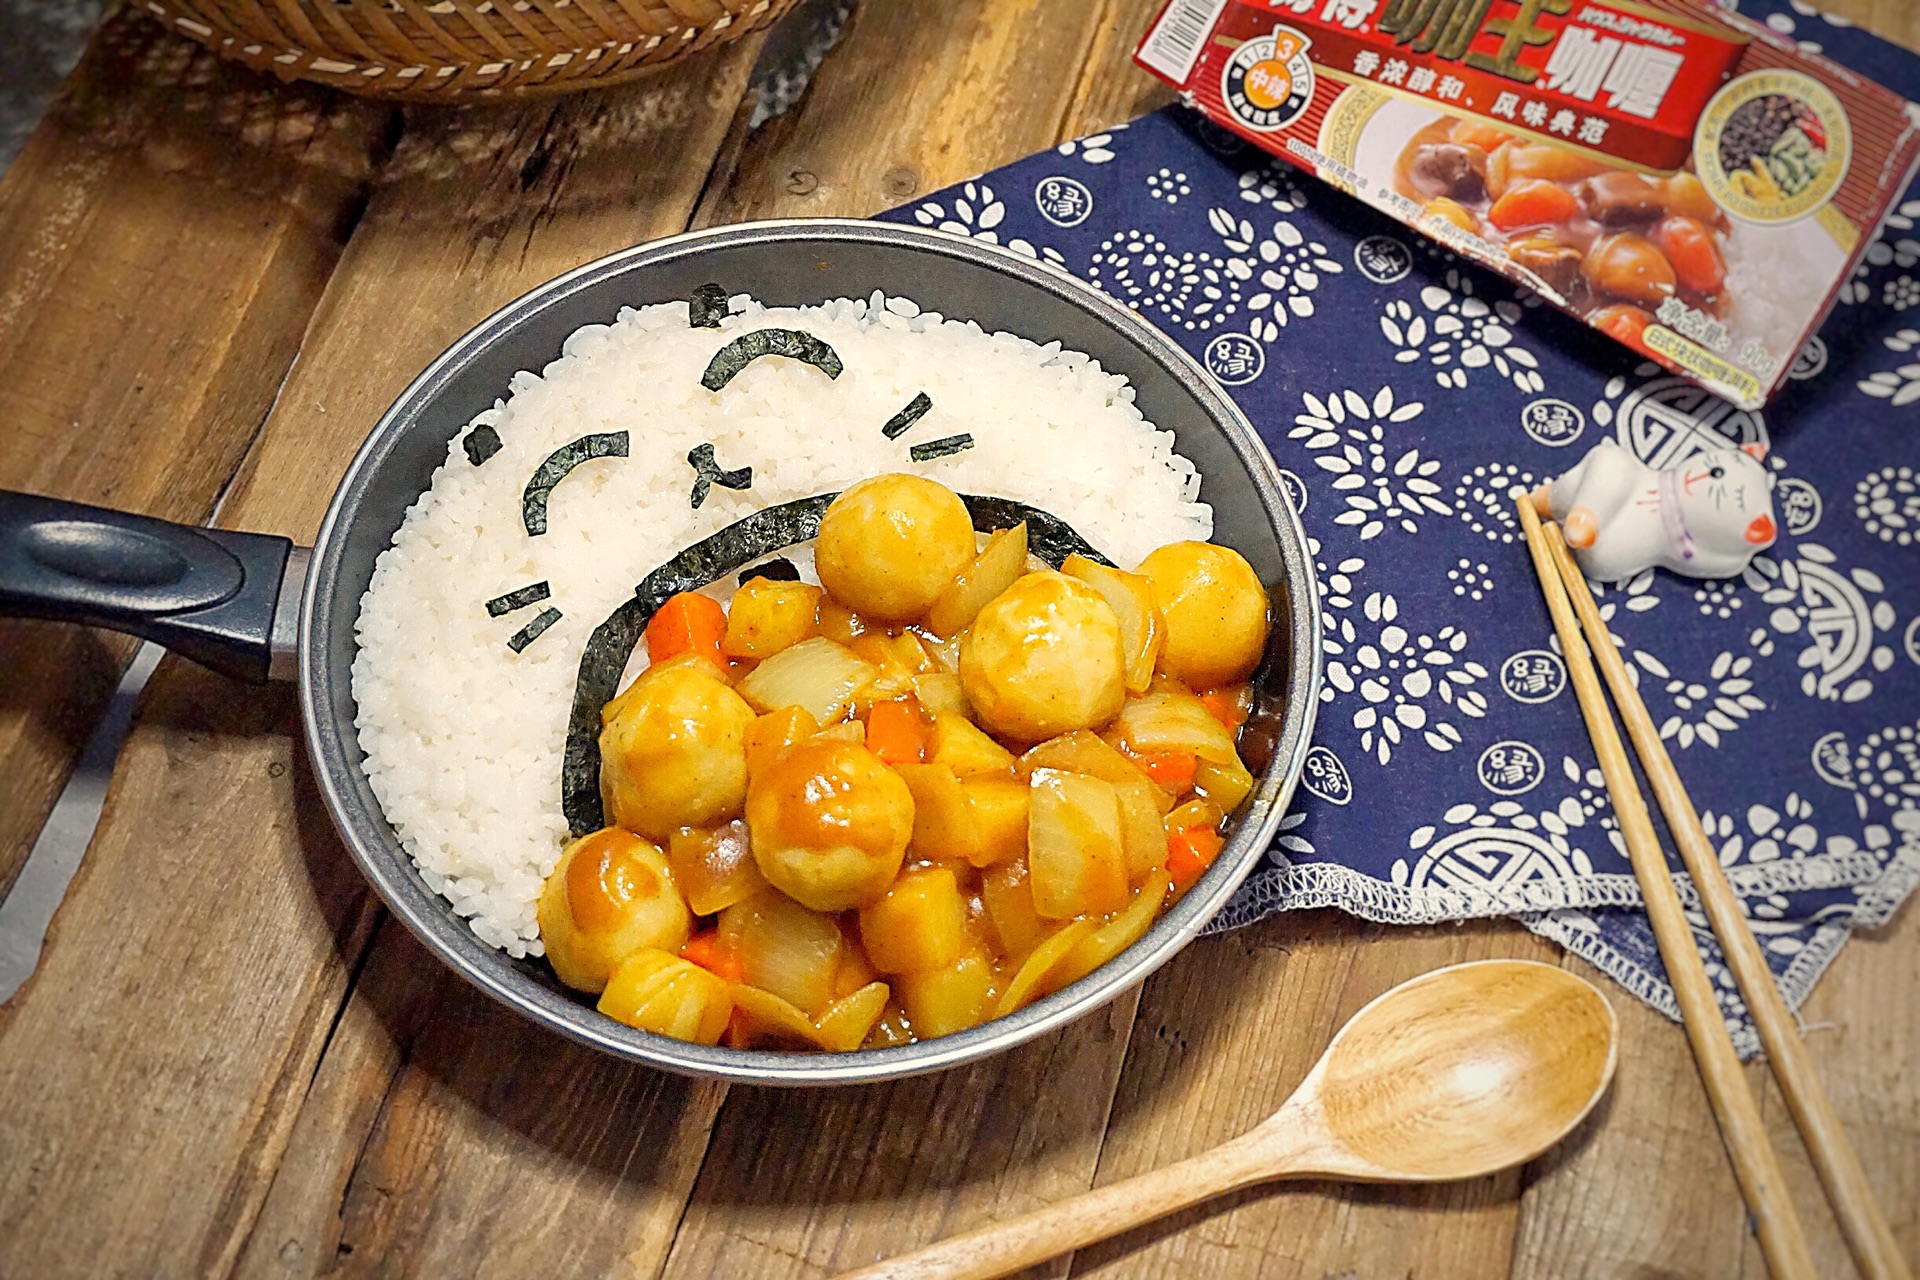 港式風味 - 咖喱魚蛋食譜、做法 | 冰冰廚房的Cook1Cook食譜分享